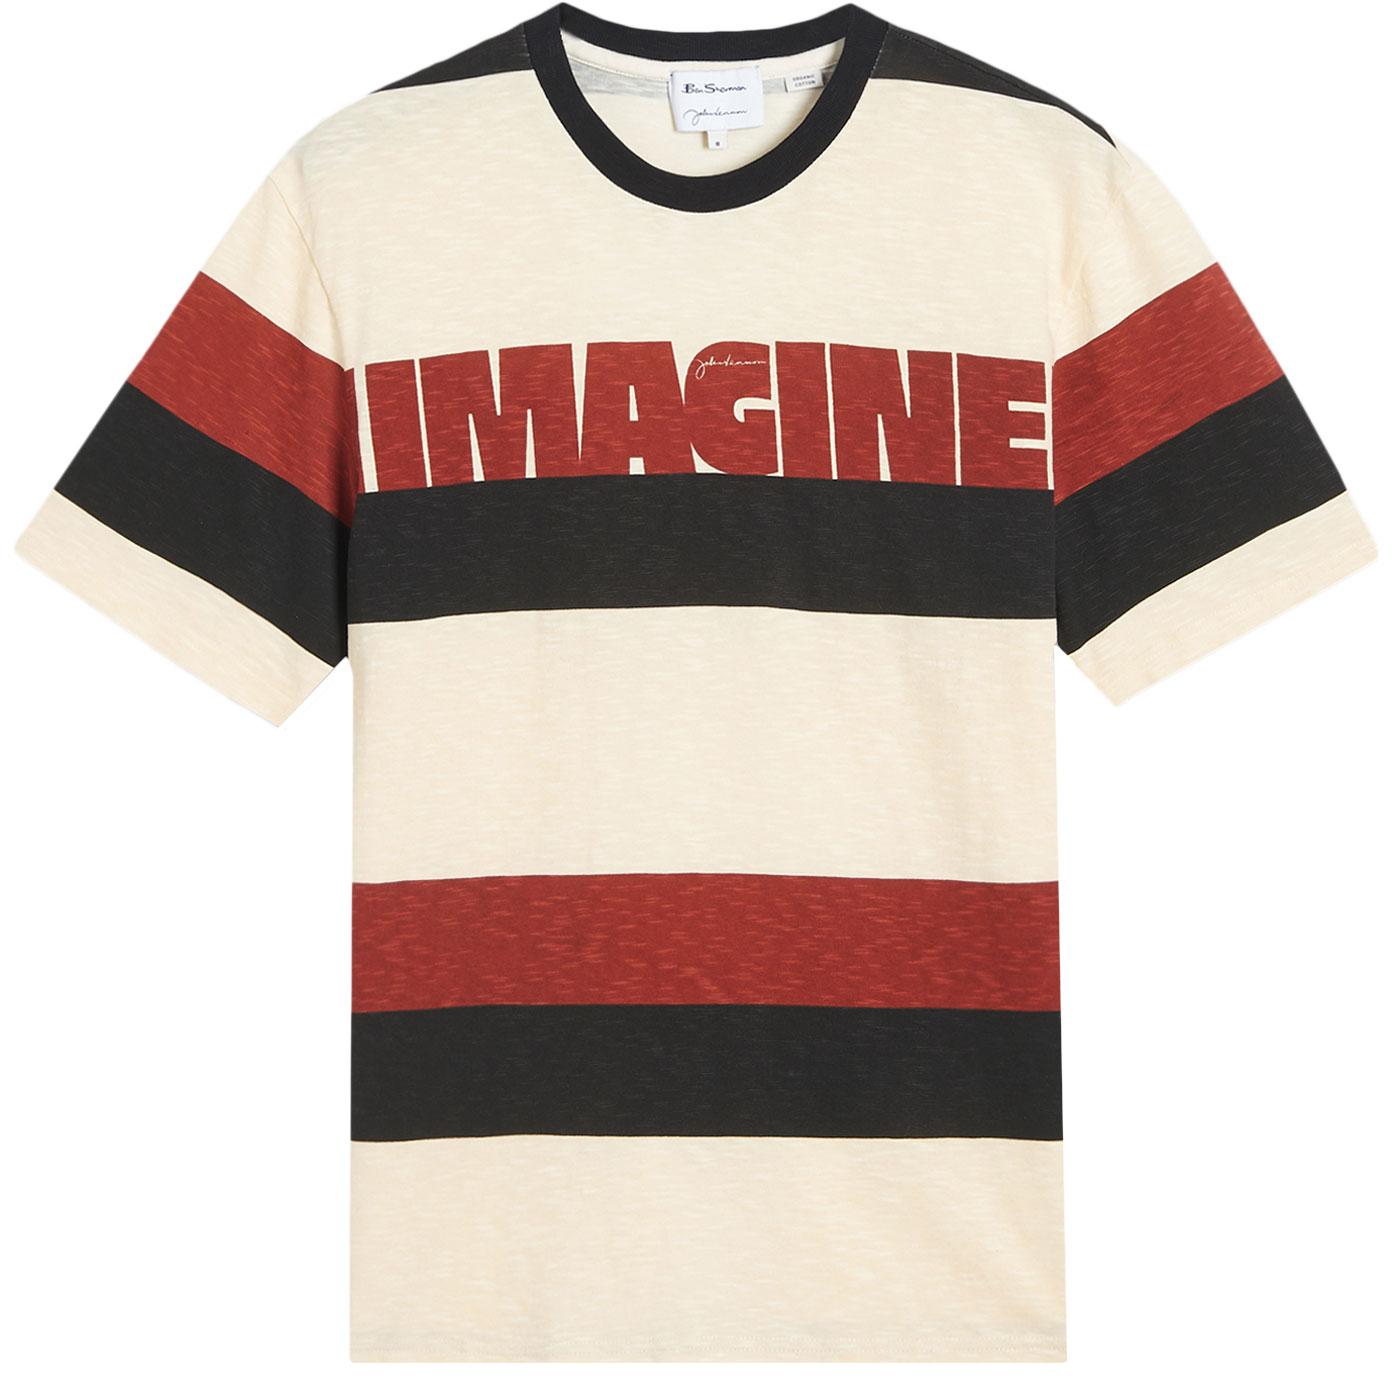 Ben Sherman x John Lennon Imagine Block Stripe Retro T-shirt